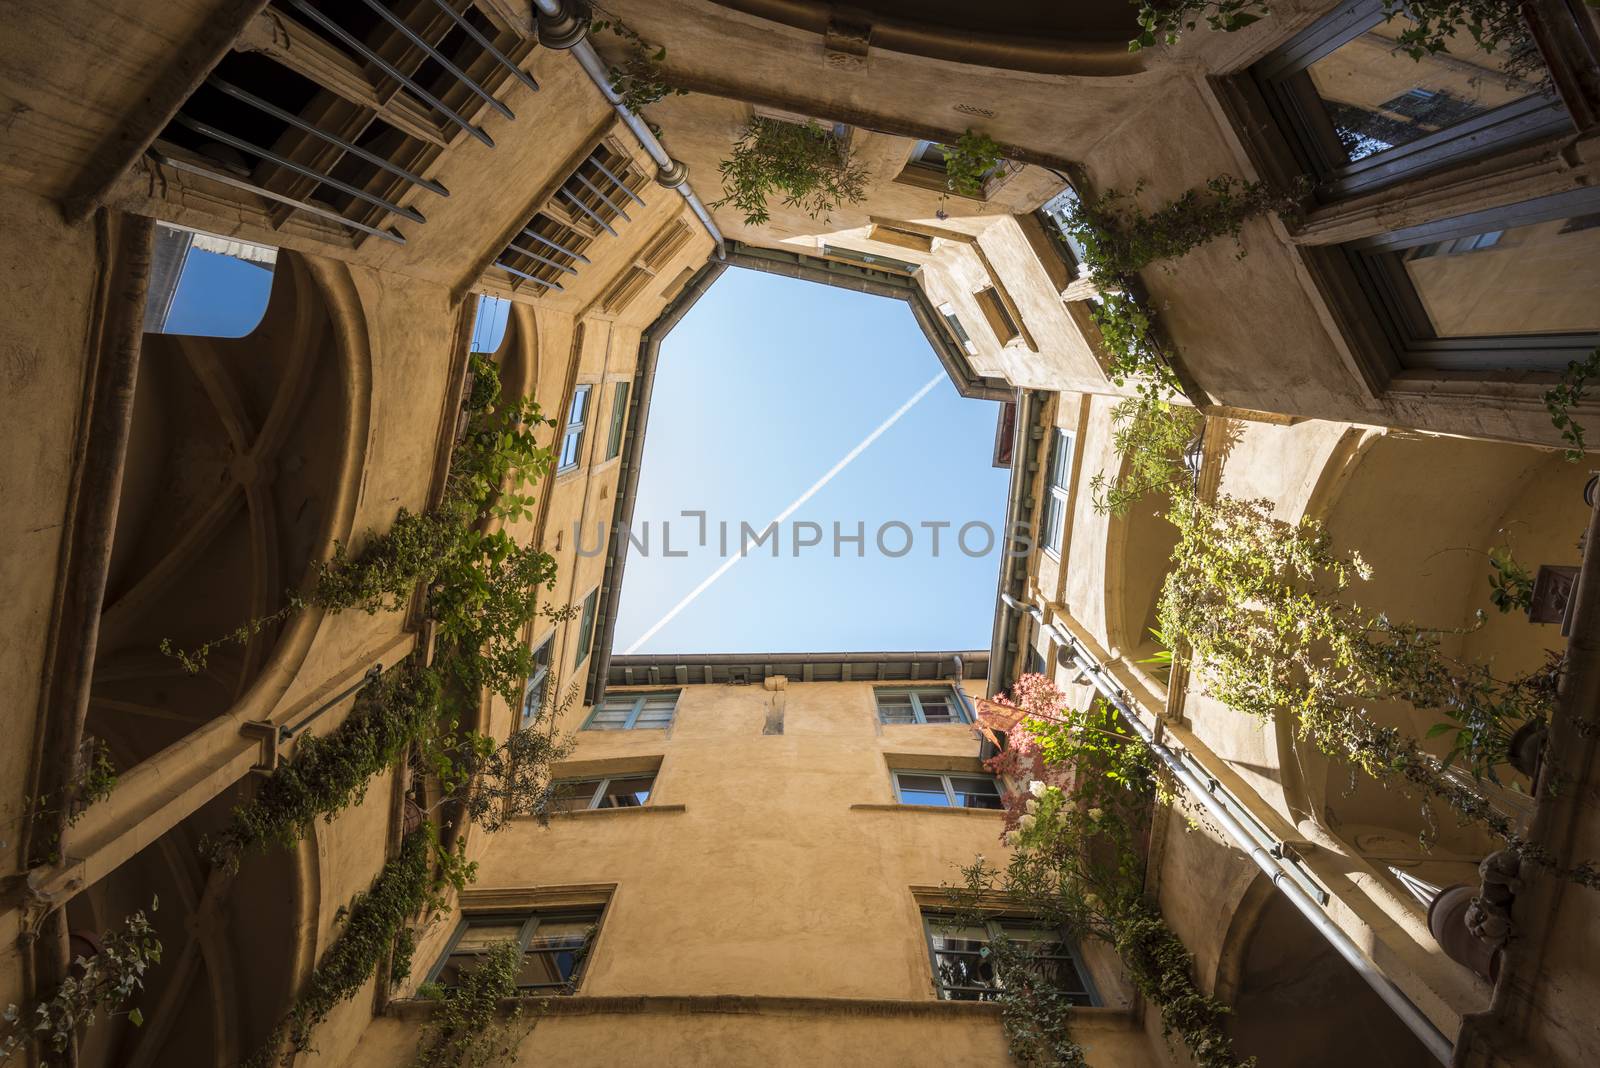 Traboule courtyard in Lyon, France by GABIS